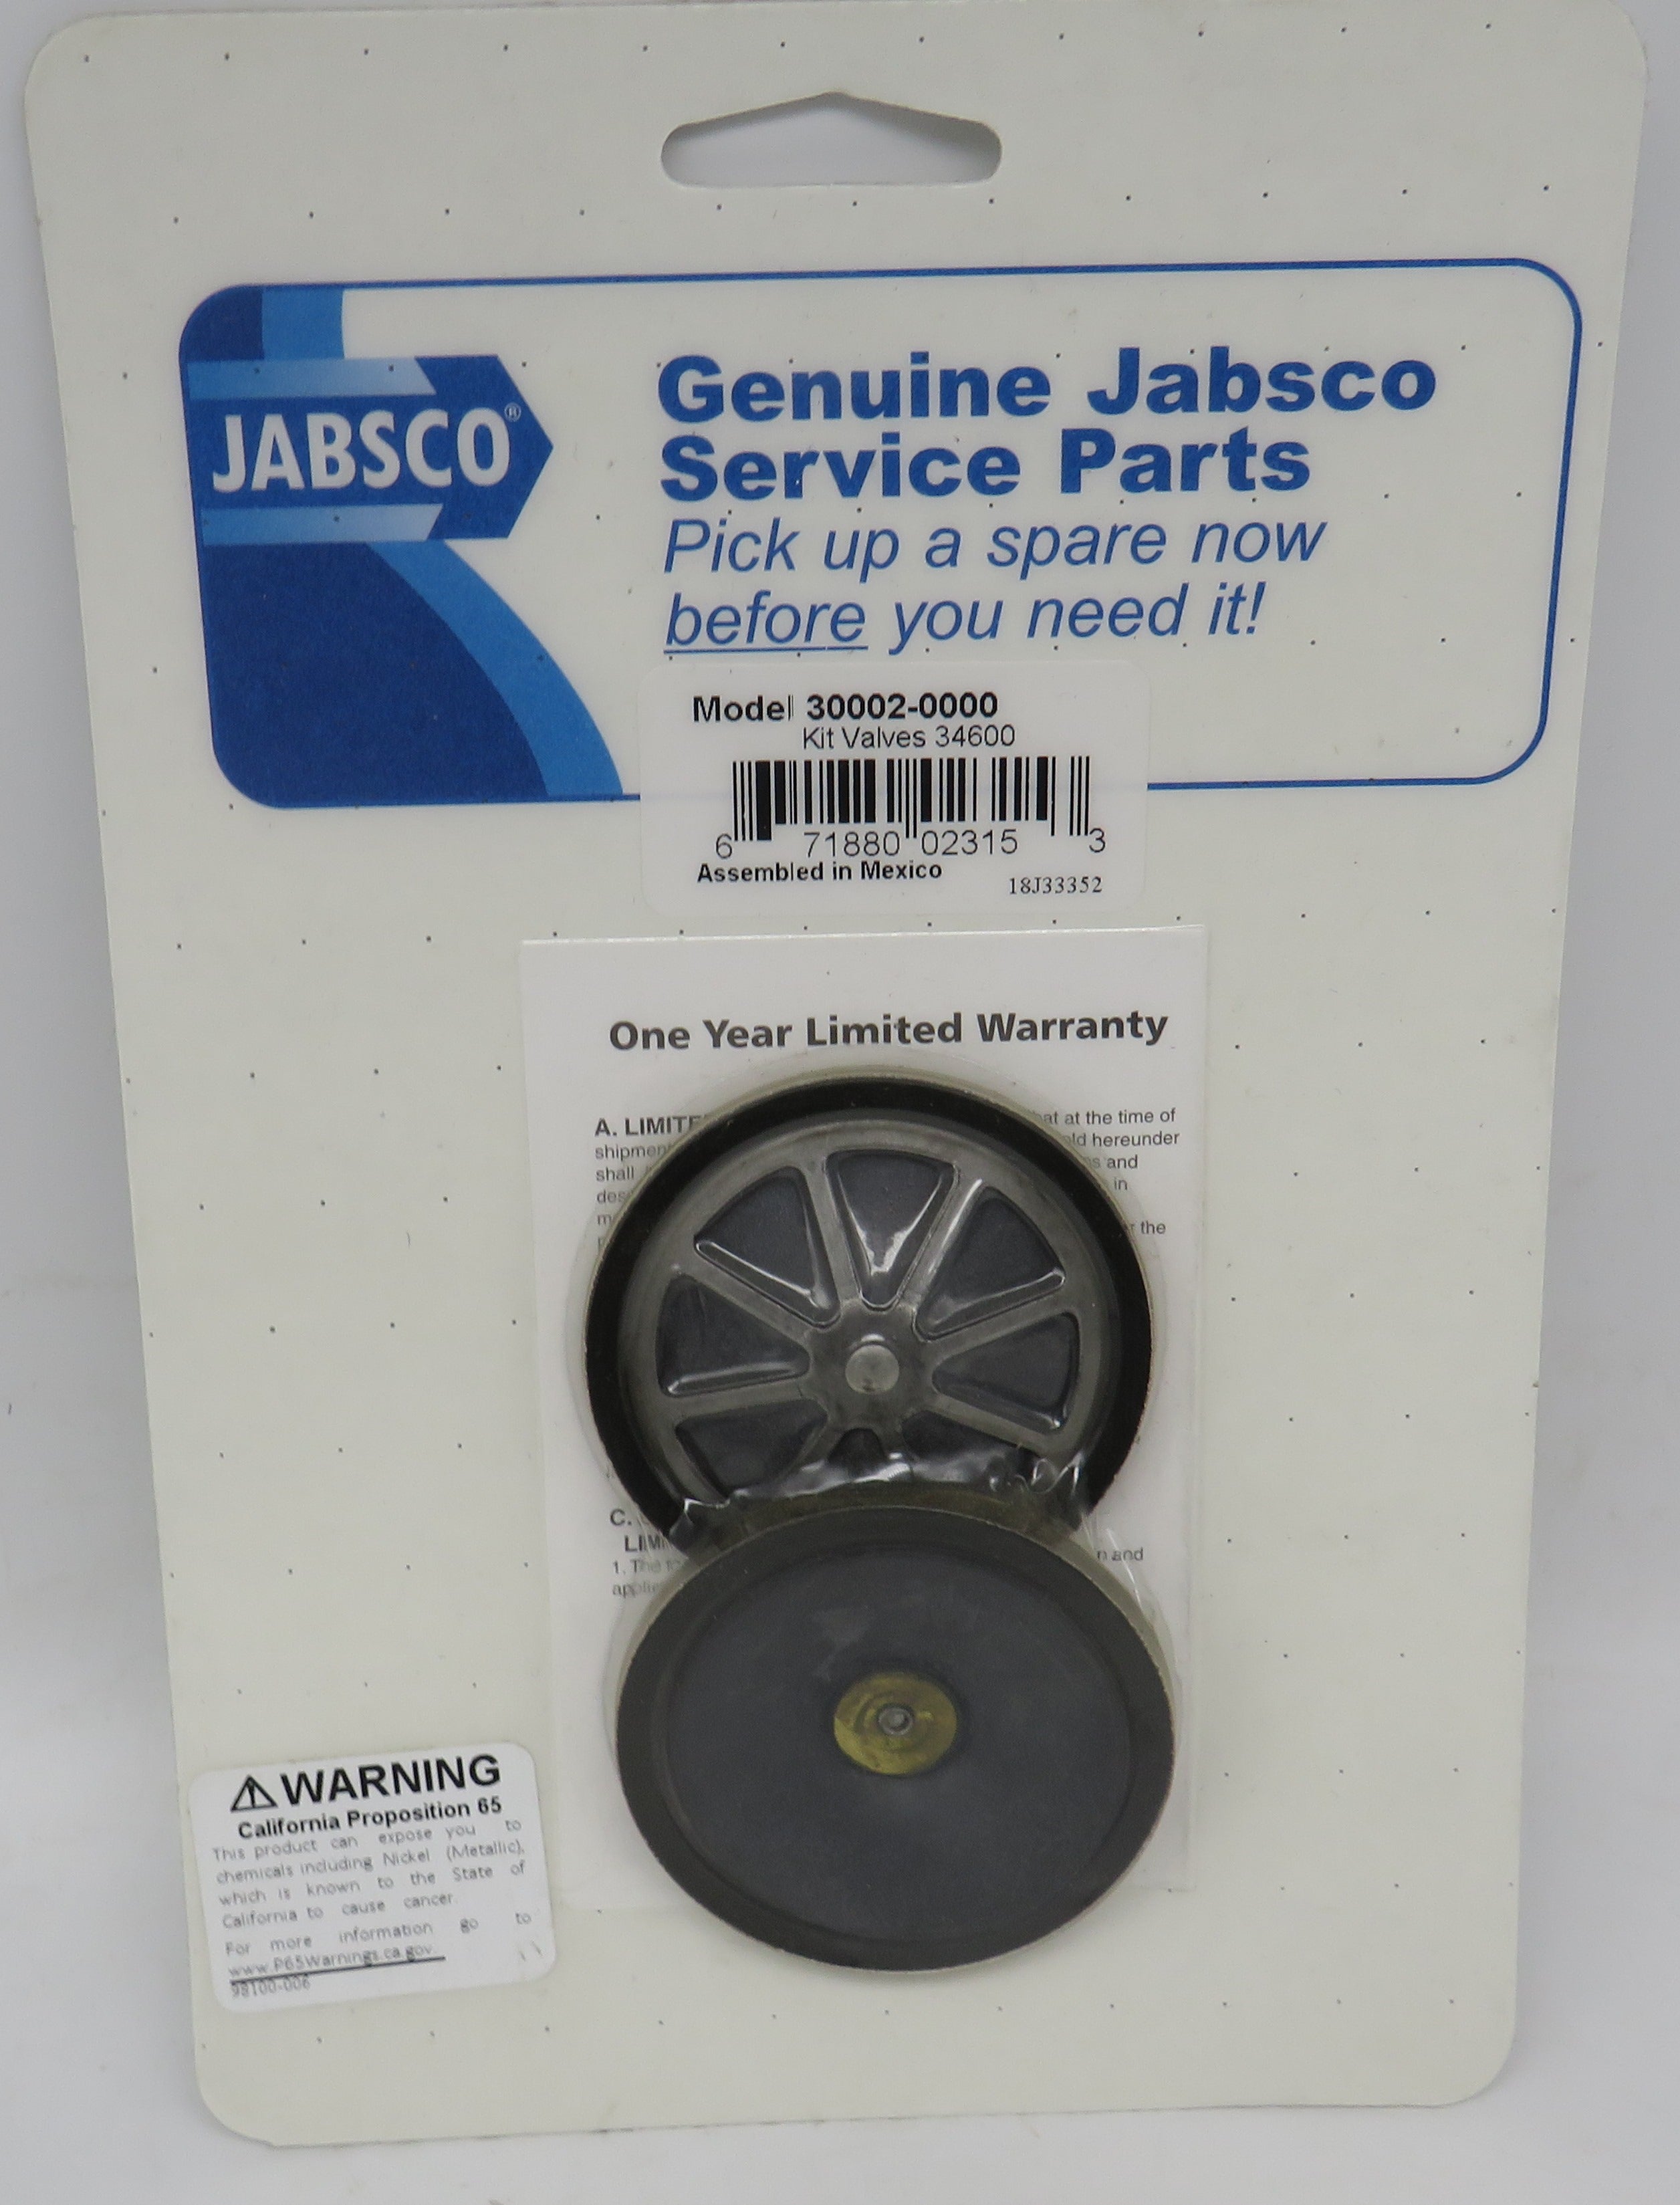 30002-0000 Jabsco Par Valve Kit For 34600